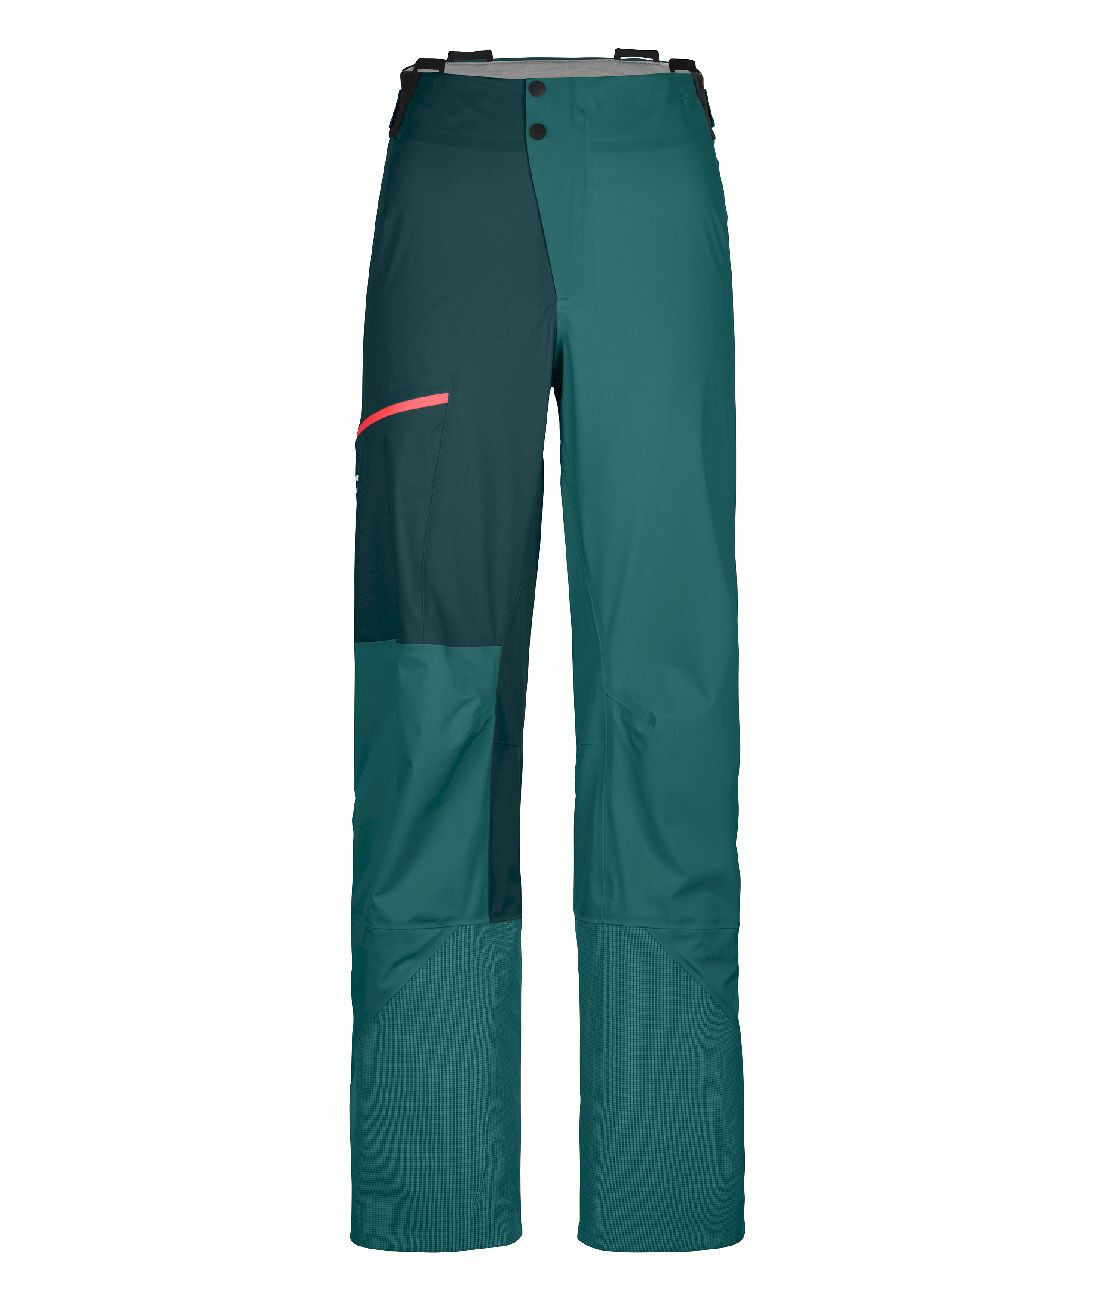 Ortovox 3L Ortler Pants - Waterproof trousers - Women's